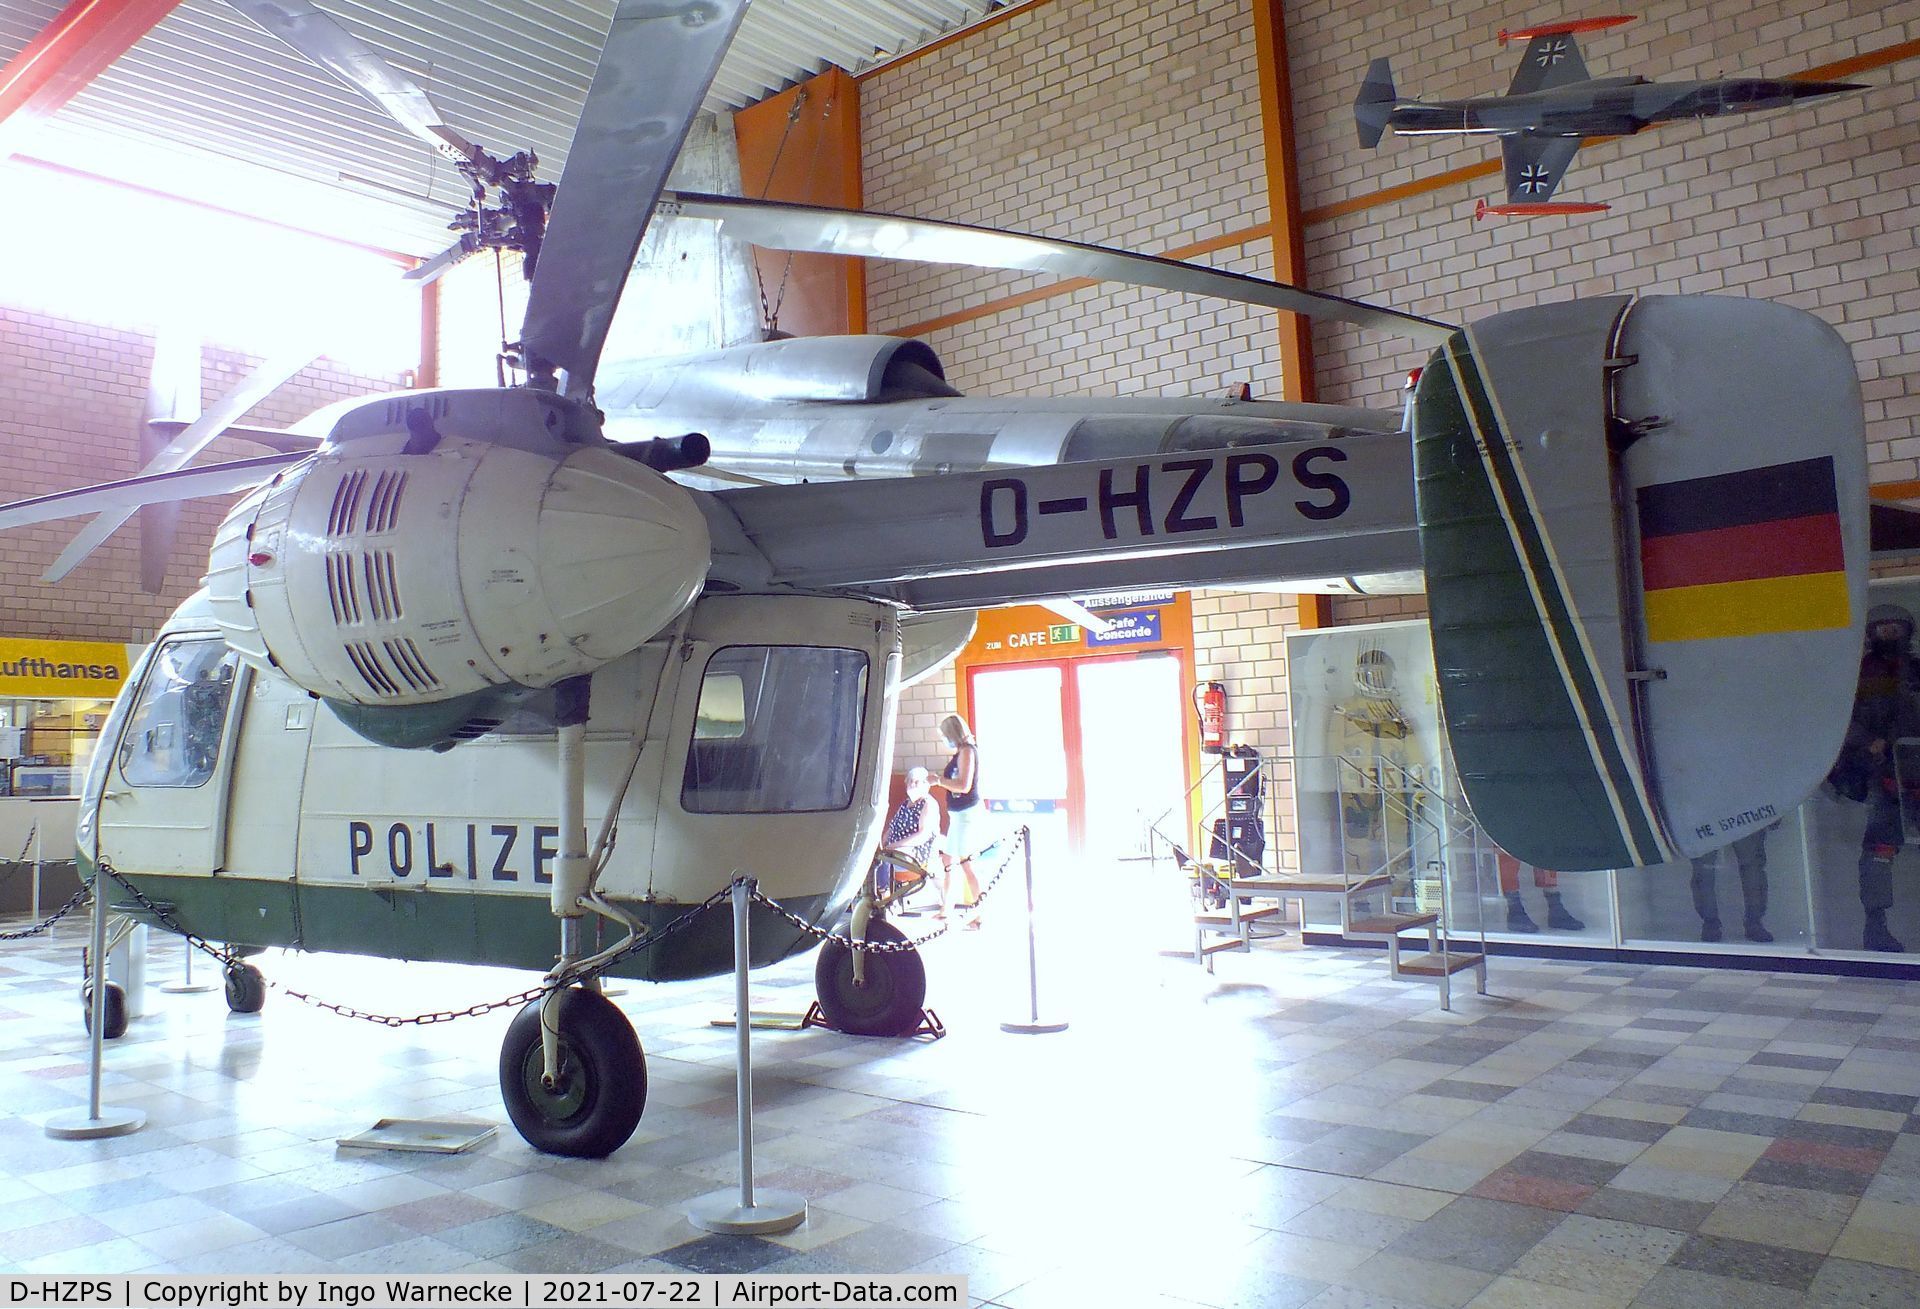 D-HZPS, Kamov Ka-26 Hoodlum C/N 7404609, Kamov Ka-26 HOODLUM at the Flugausstellung P. Junior, Hermeskeil